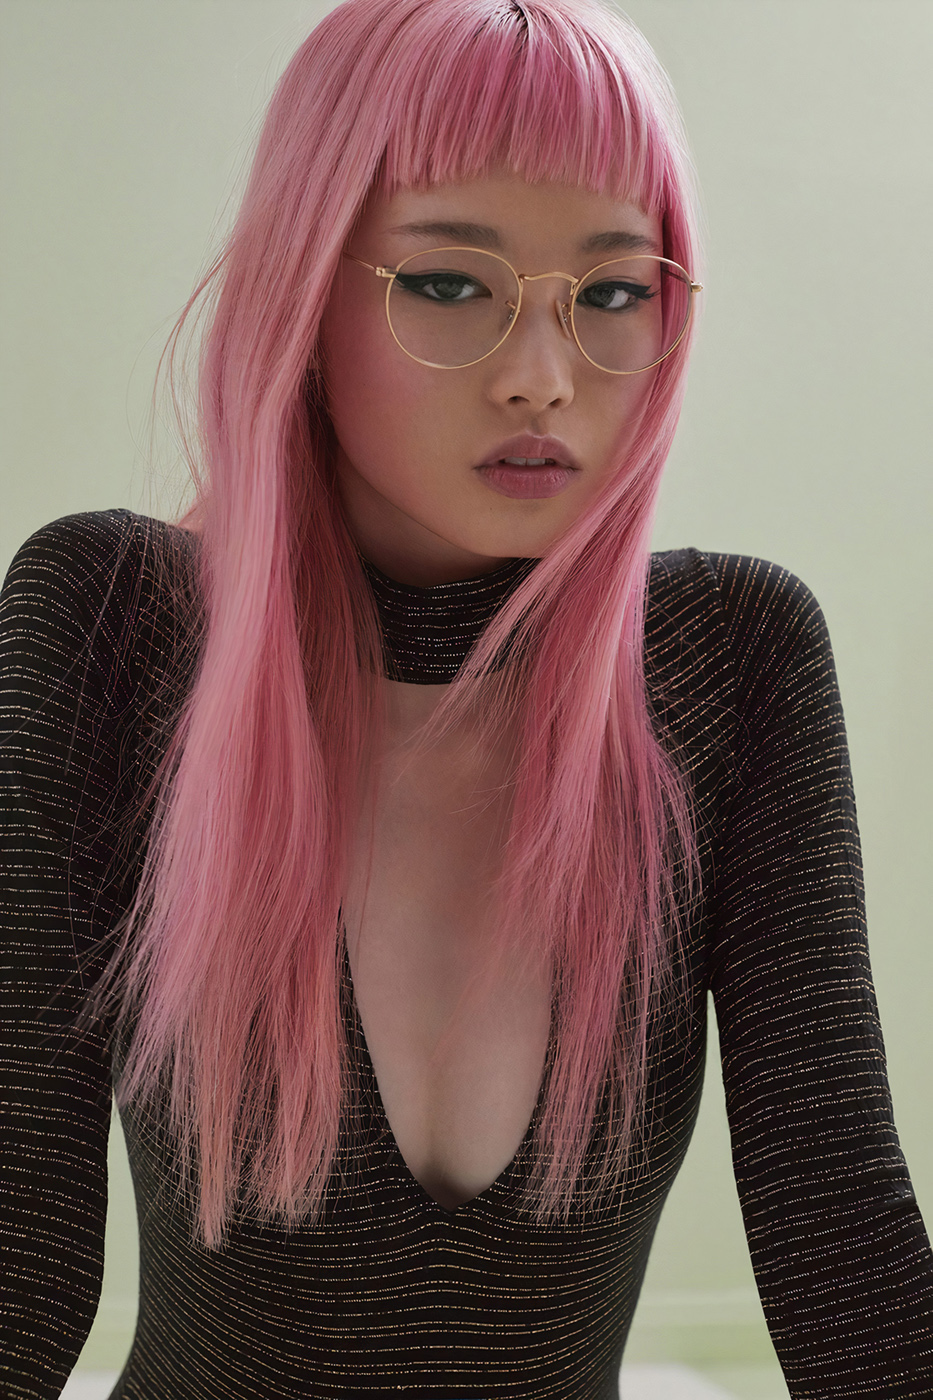 Fernanda Ly Women Model Pink Hair Women With Glasses Chinese Chinese Model Long Hair Women Indoors 933x1400